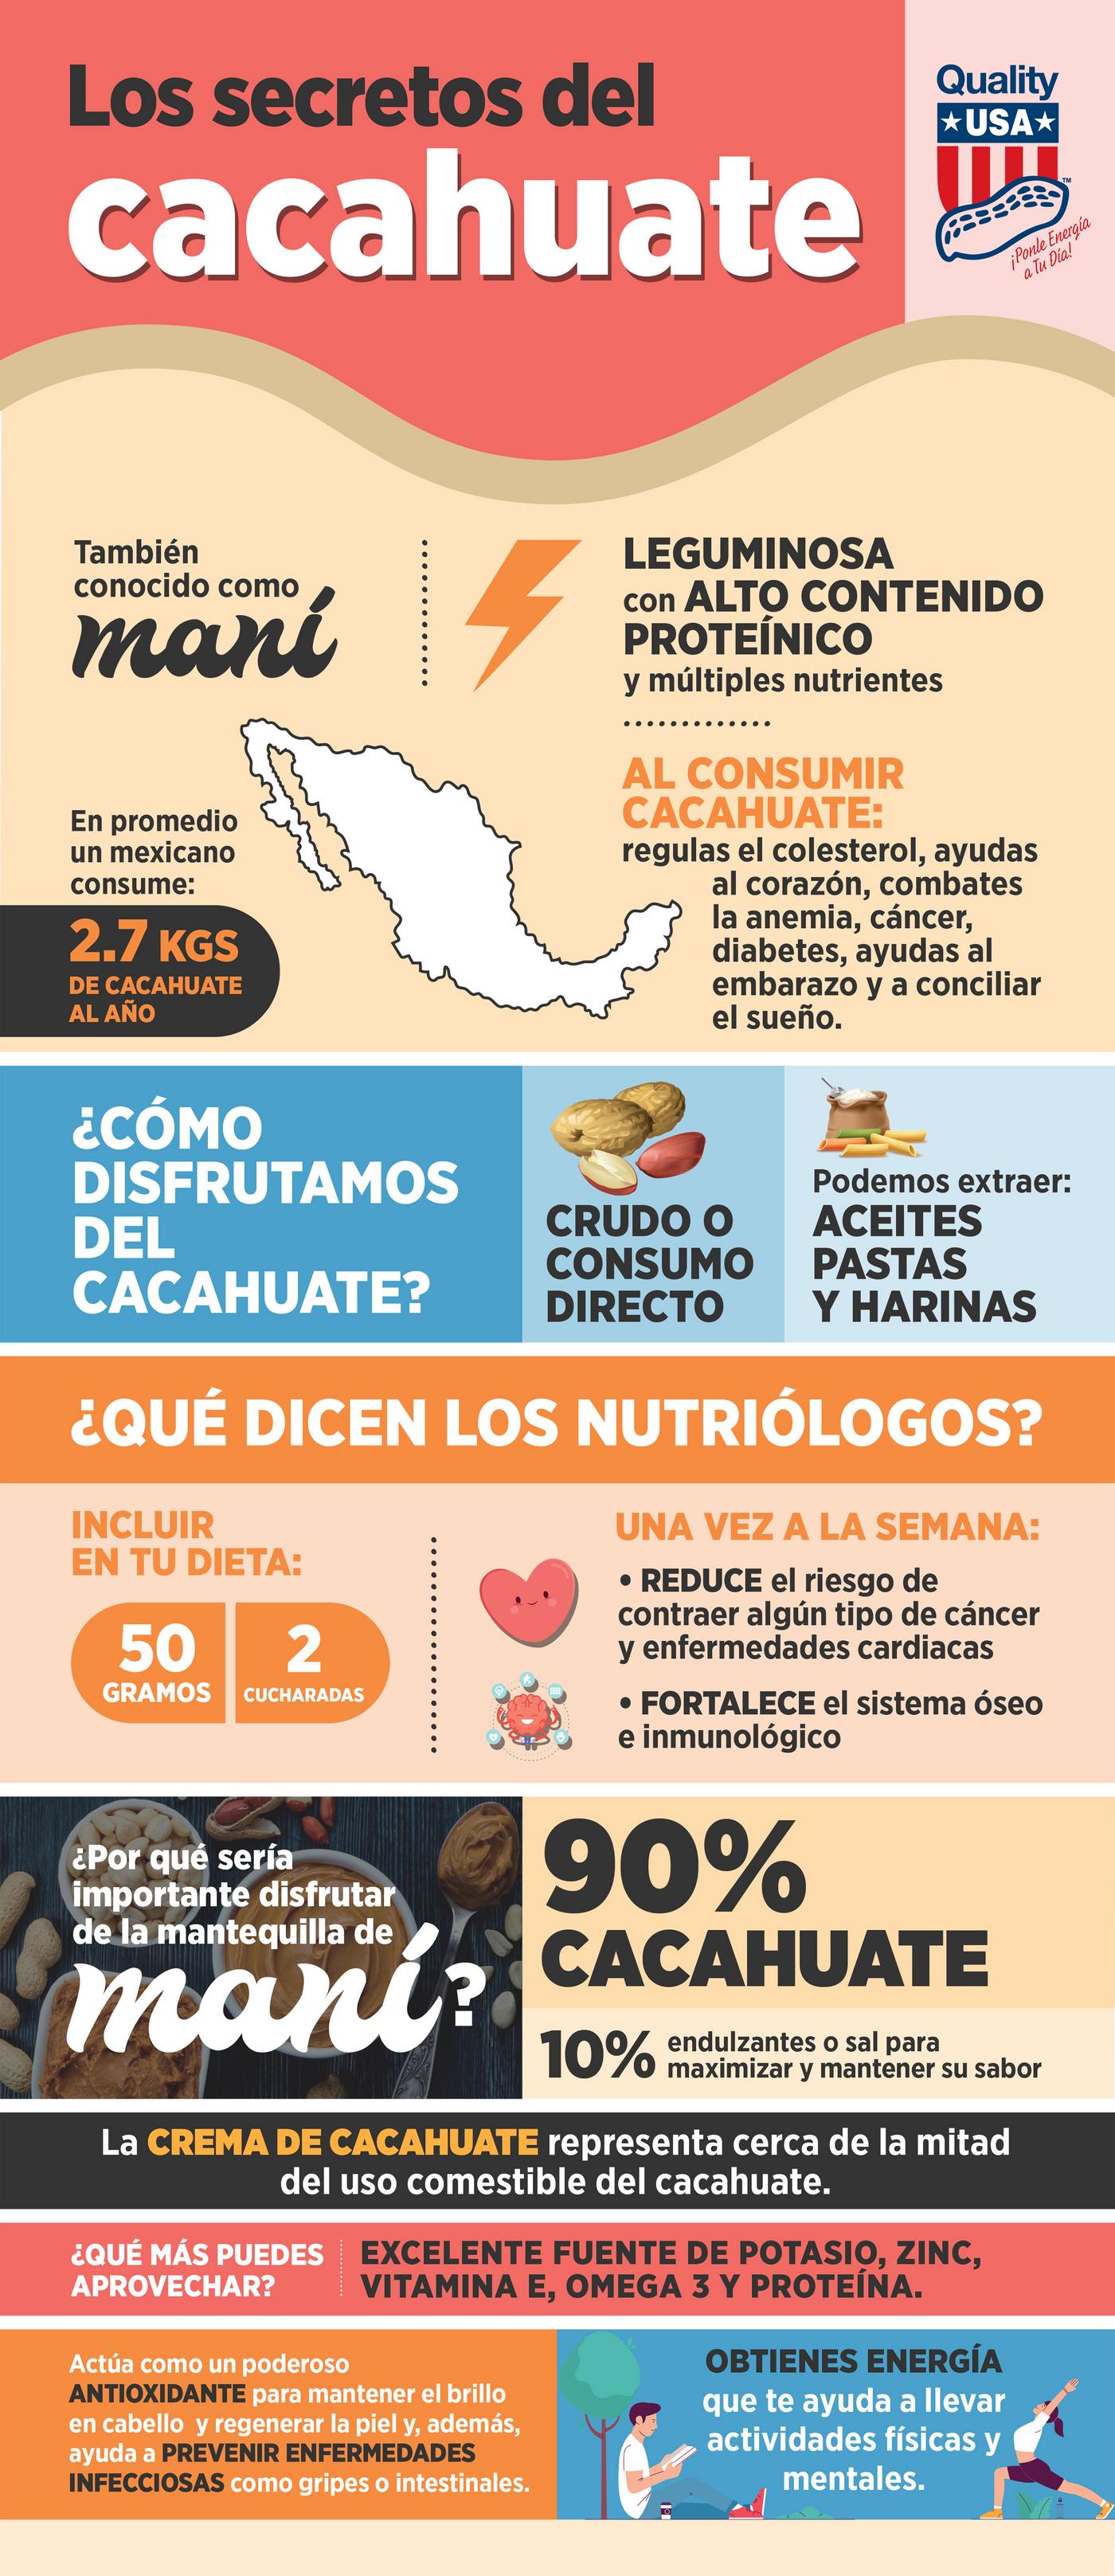 Los secretos del cacahuate qué debes conocer